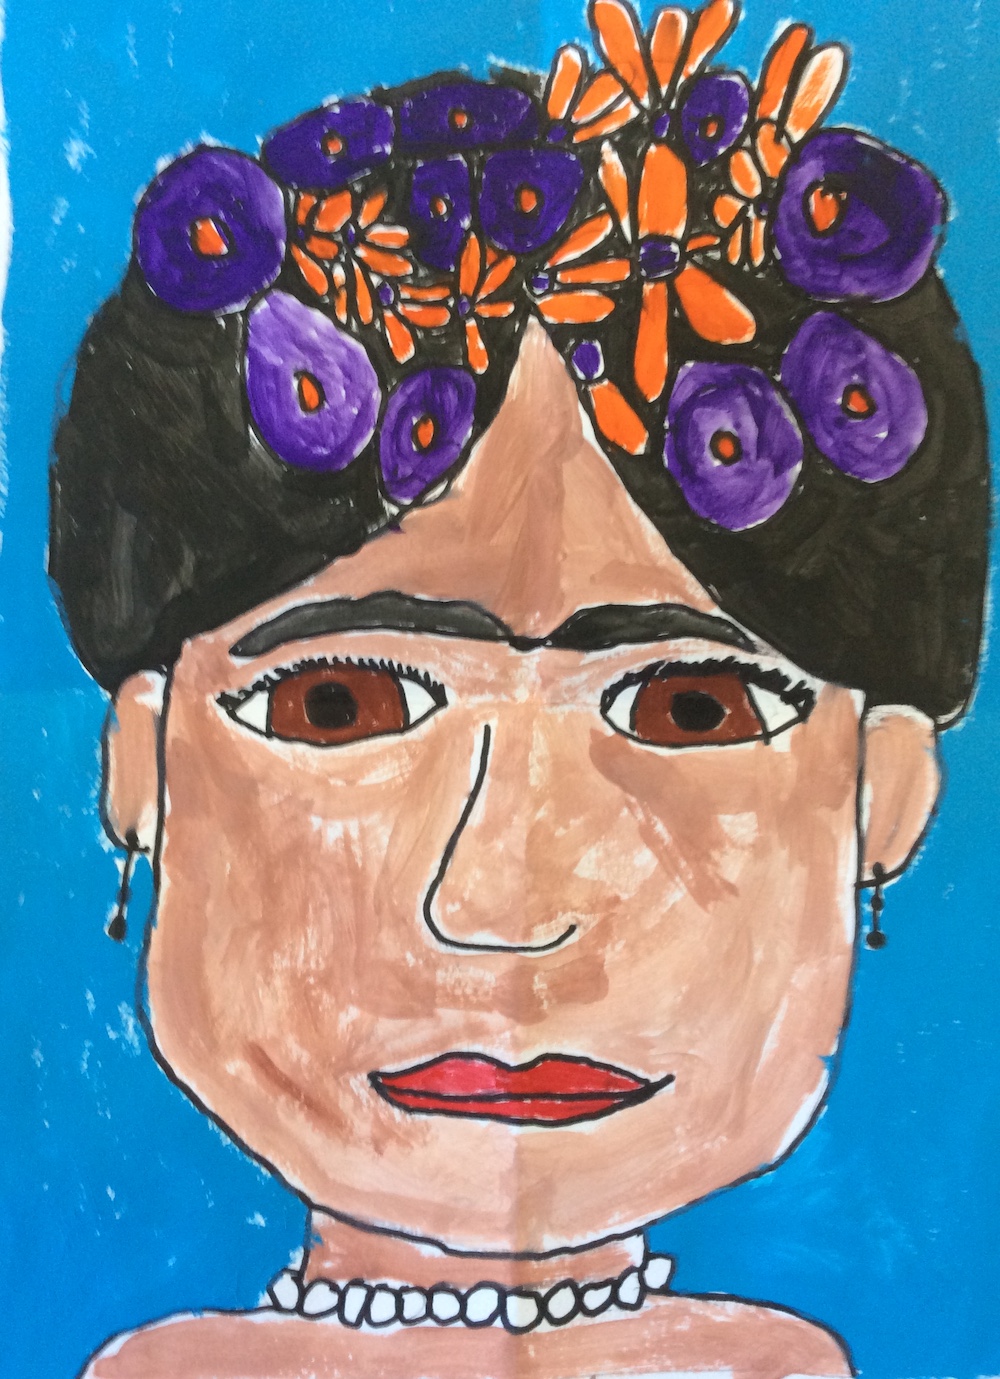 Frida inspired artwork